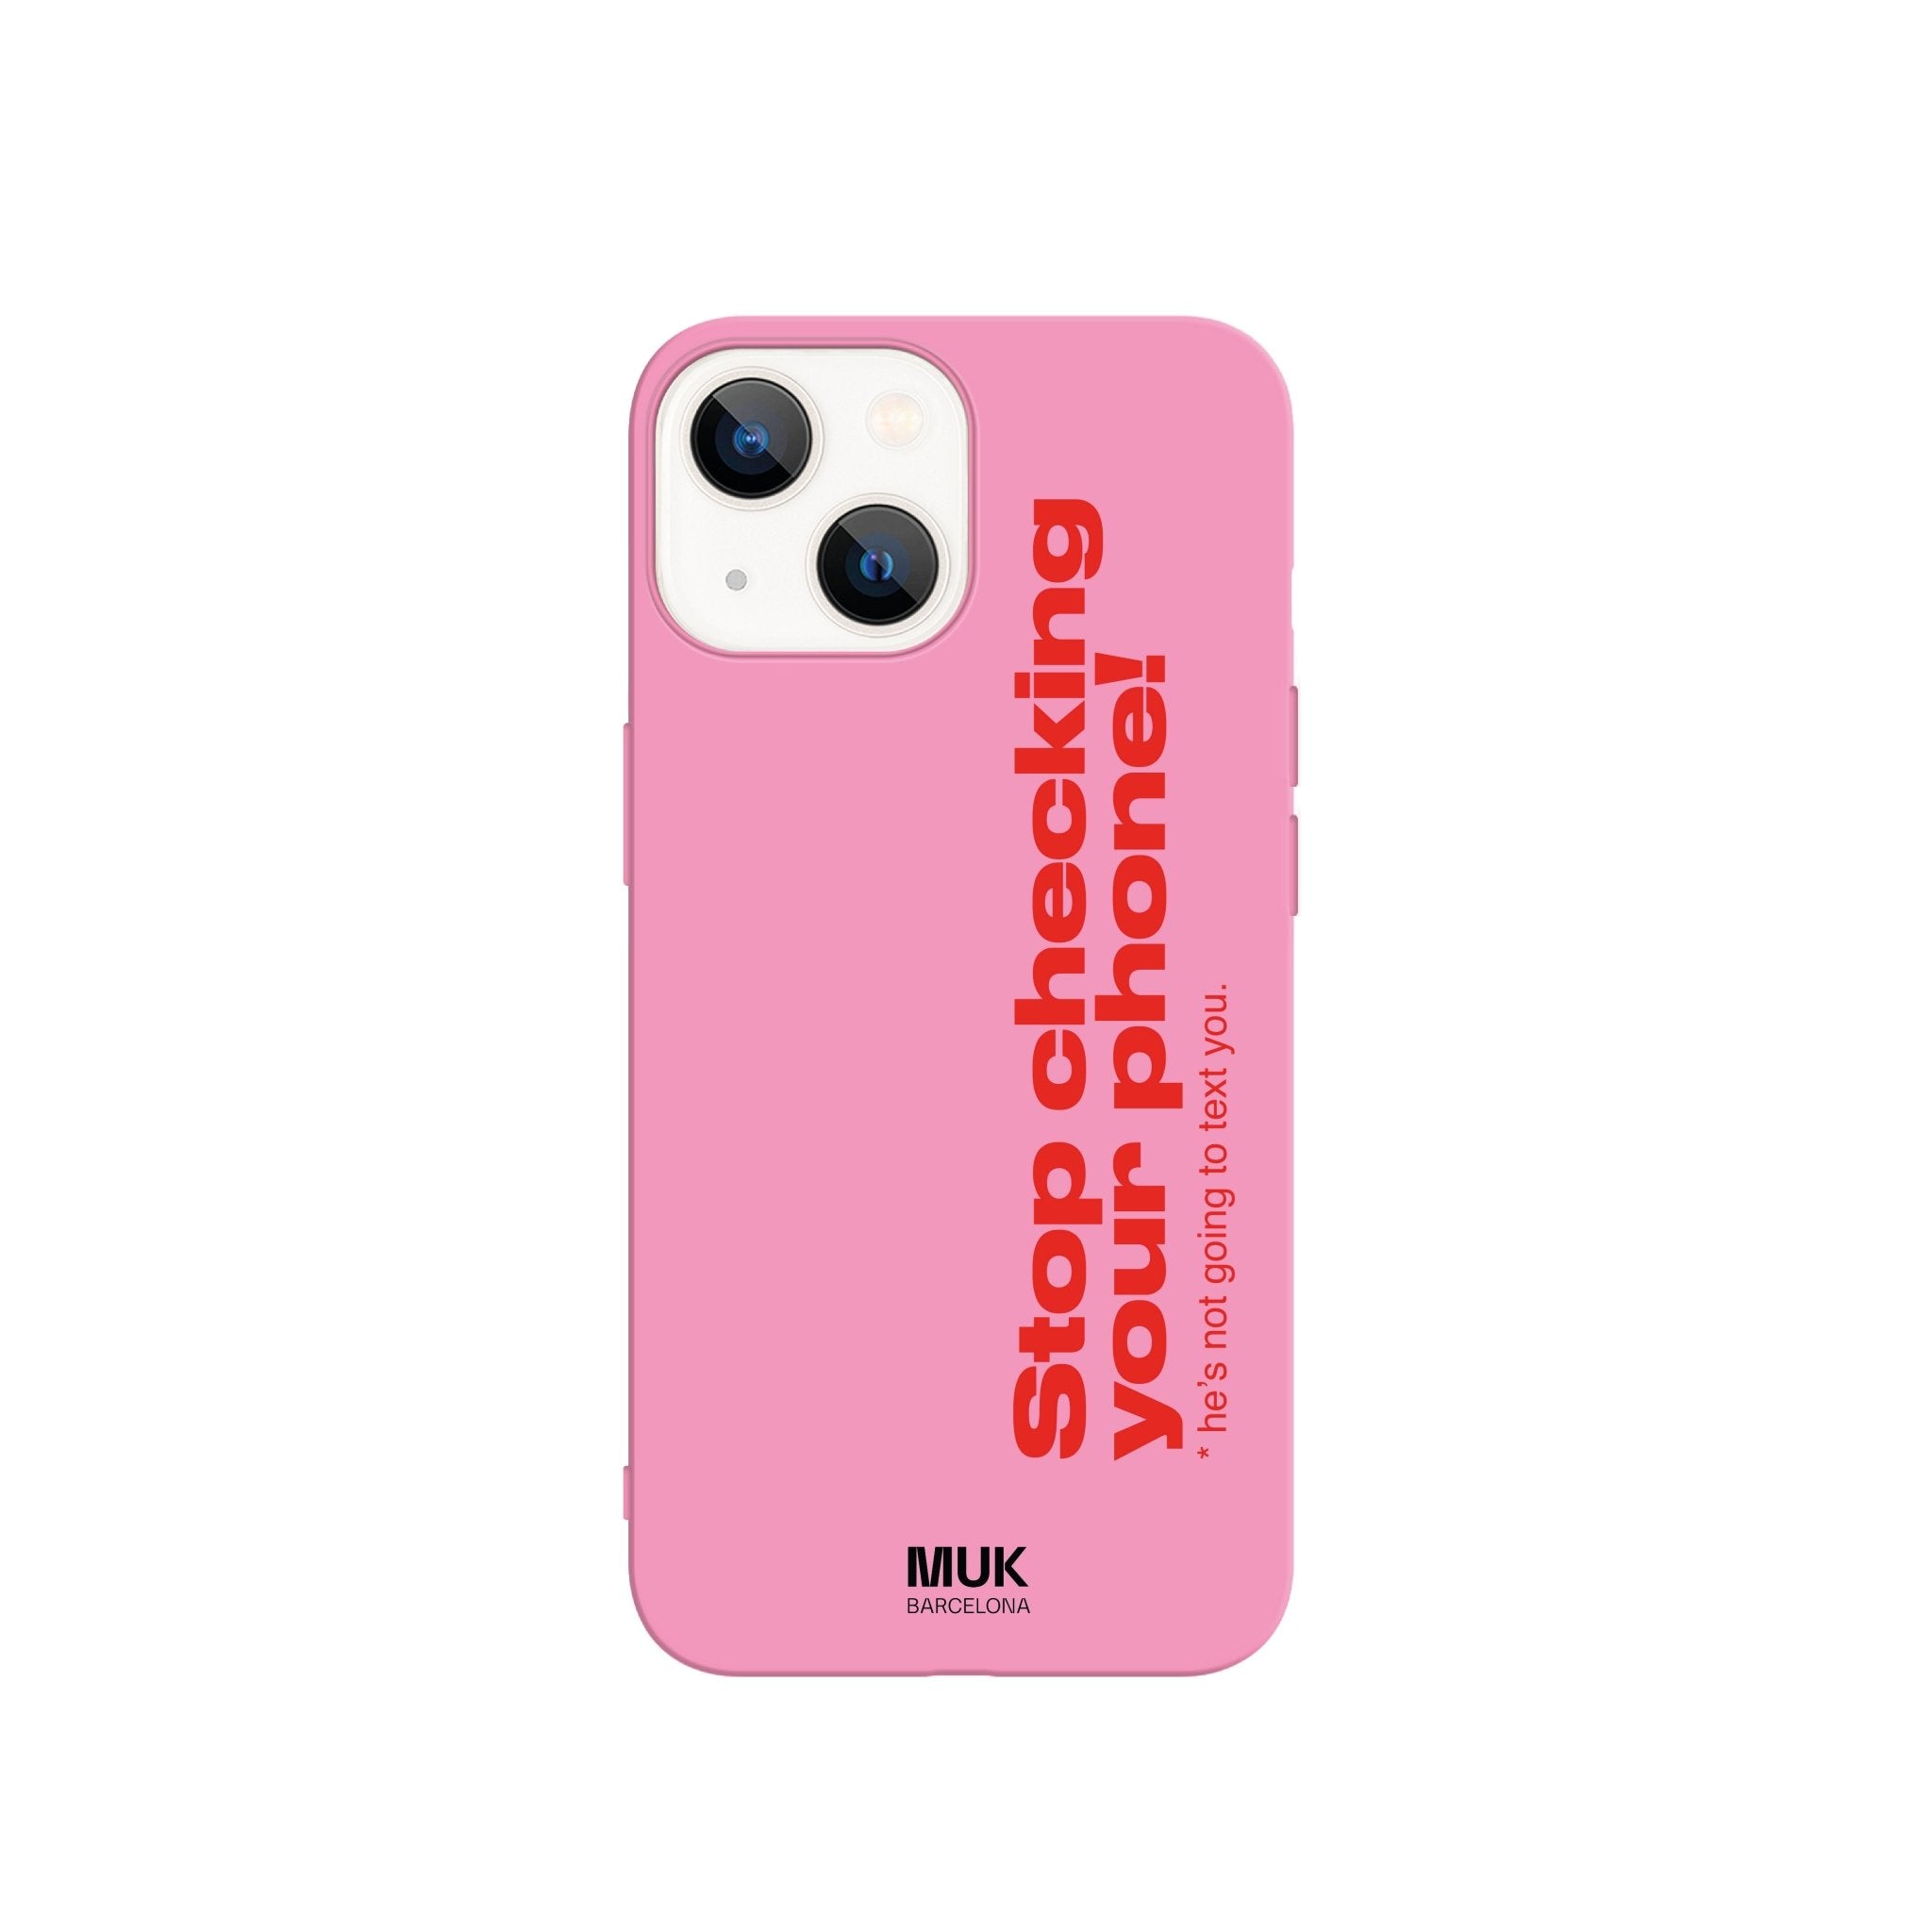 Funda de móvil TPU de color rosa con texto “Stop checking your phone! He is not going to text you.” en color rojo.
